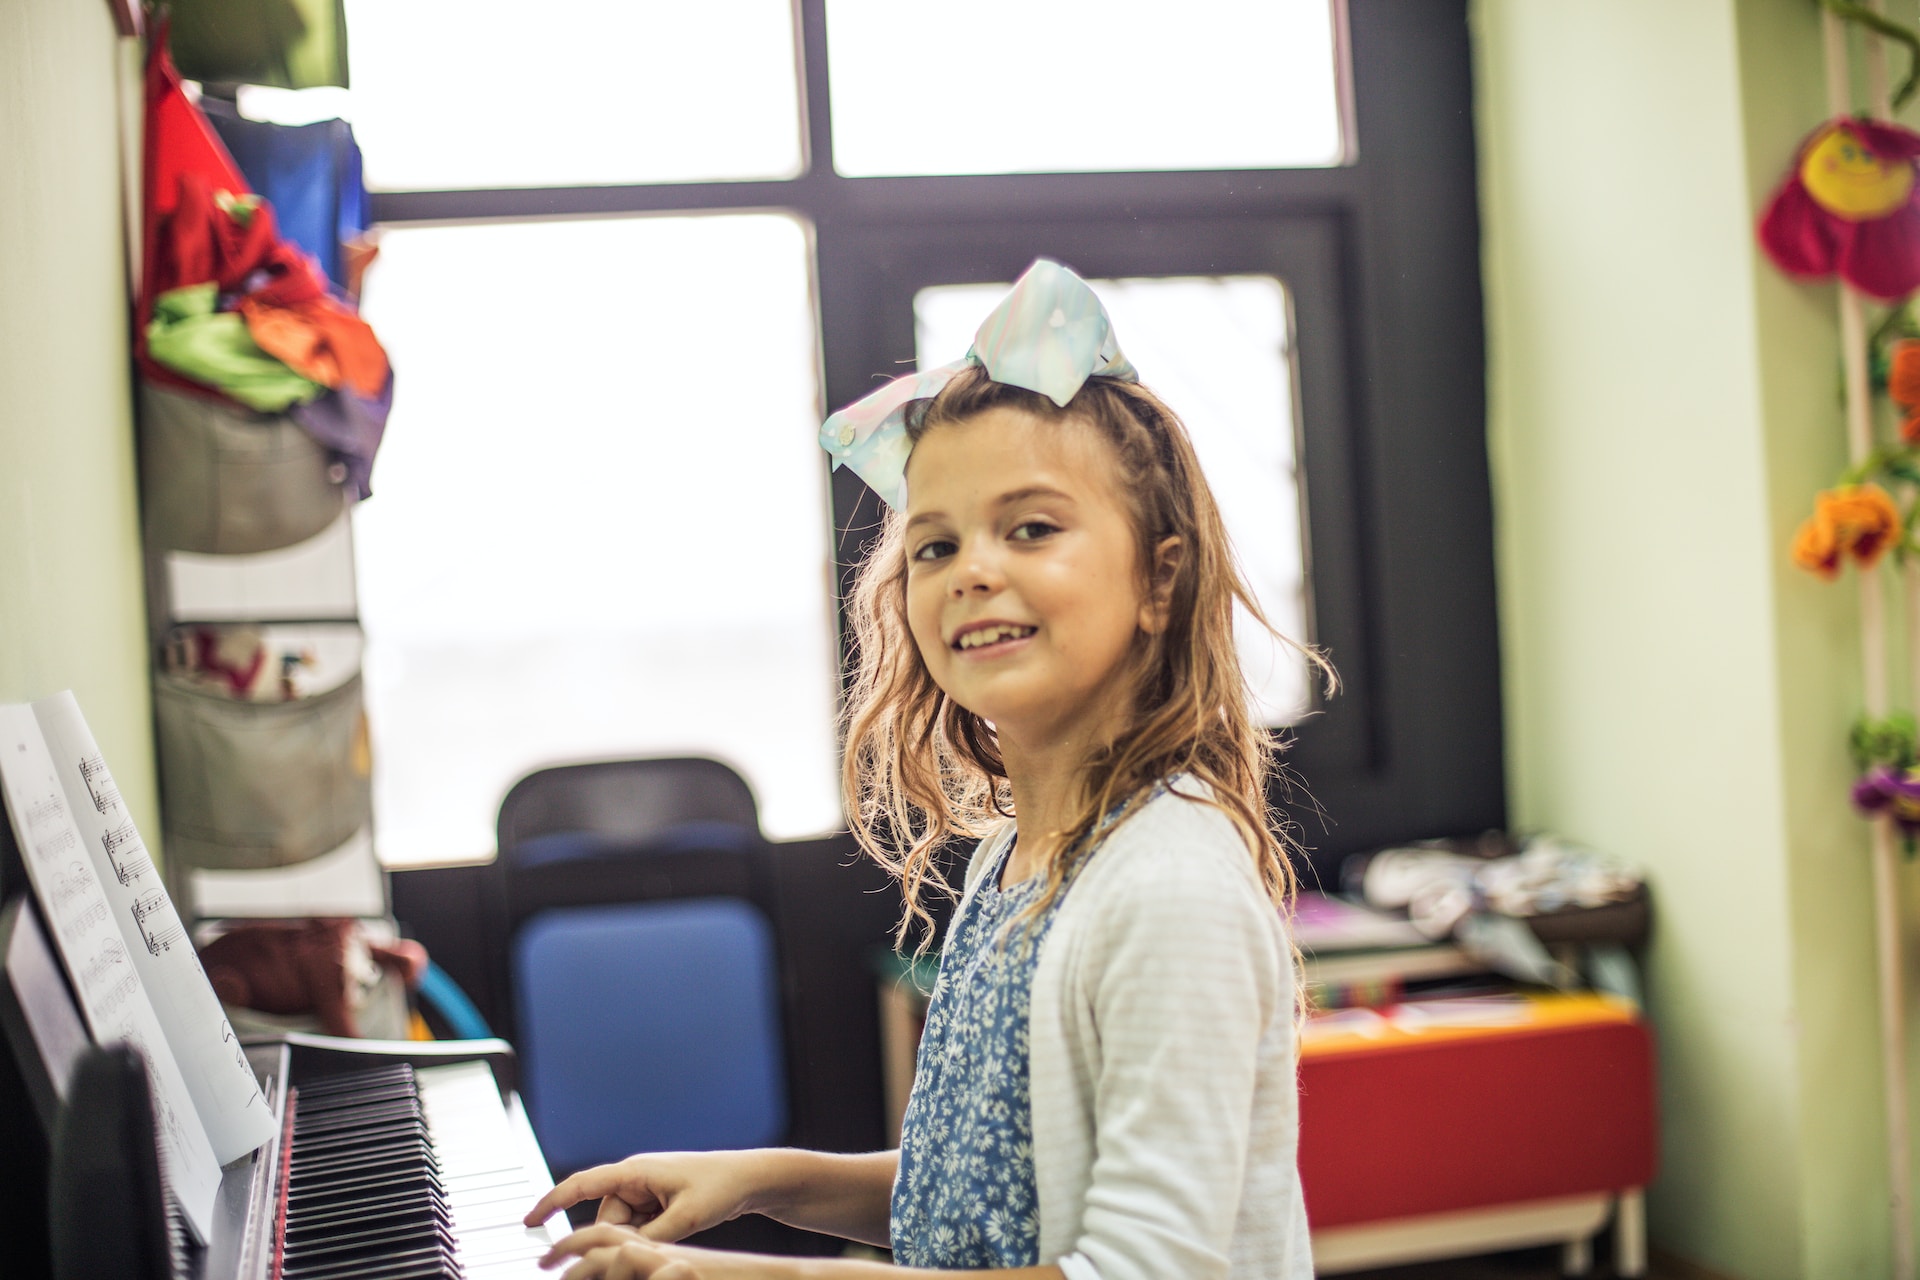 Apprendre le piano à l'âge Adulte : Défis, Avantages et Conseils